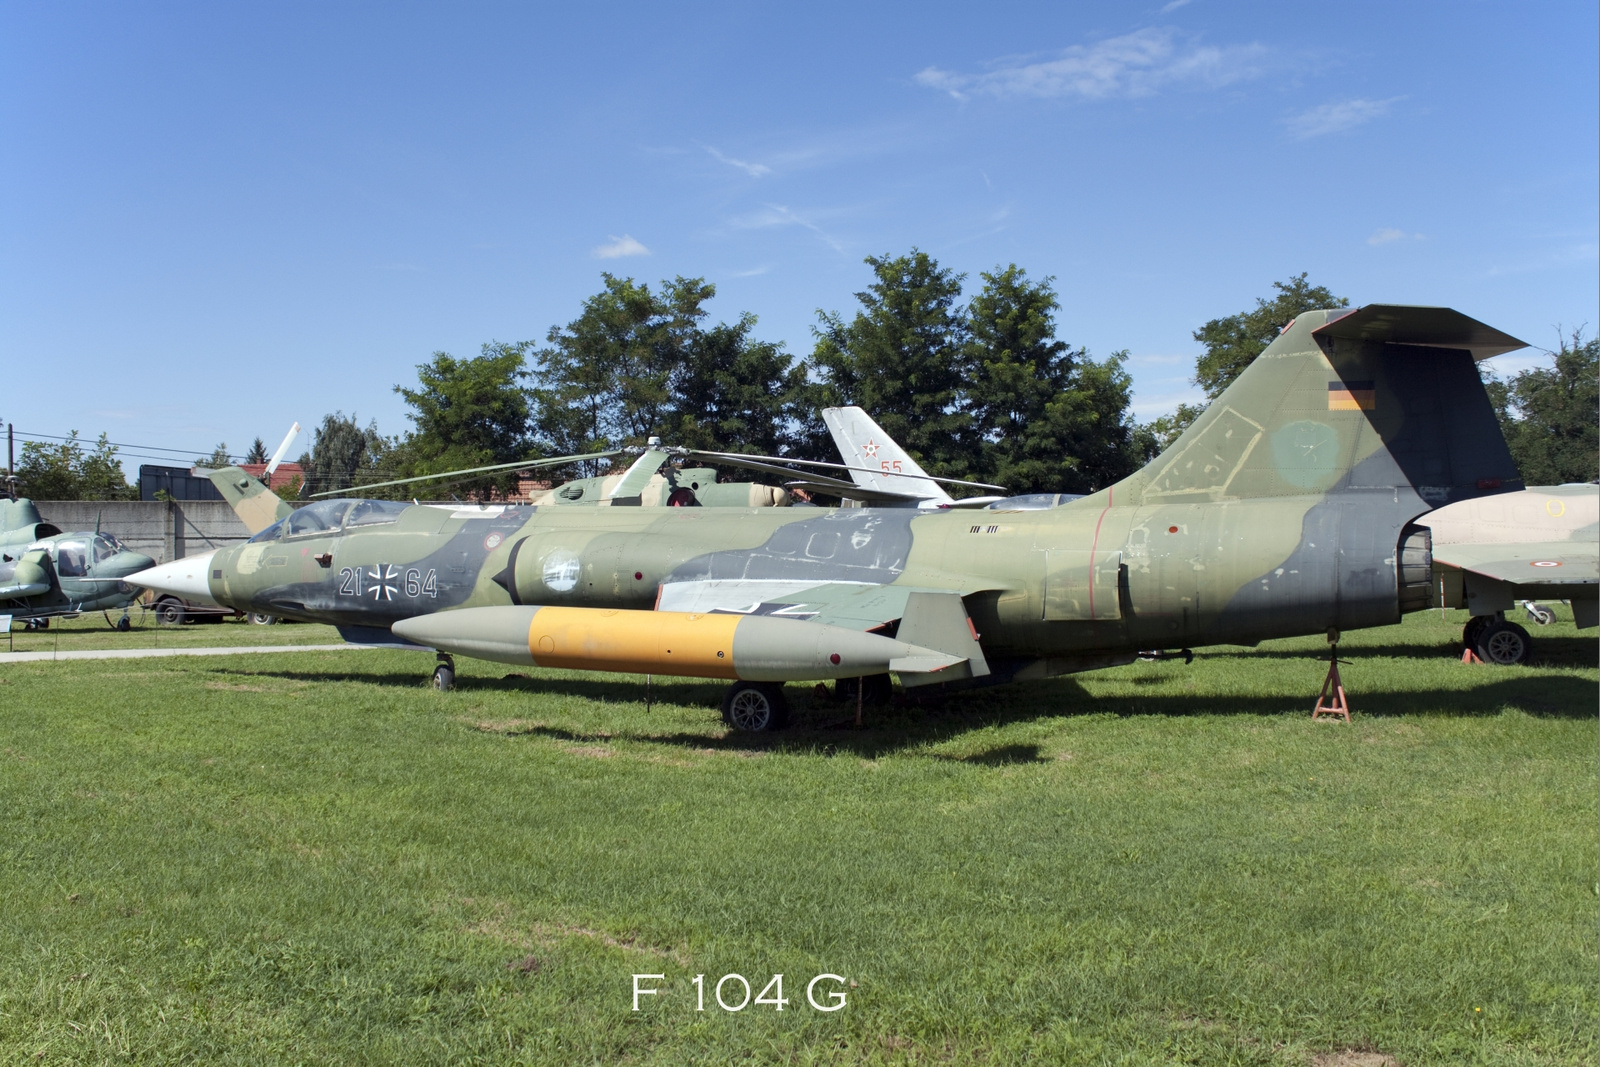 F 104 G